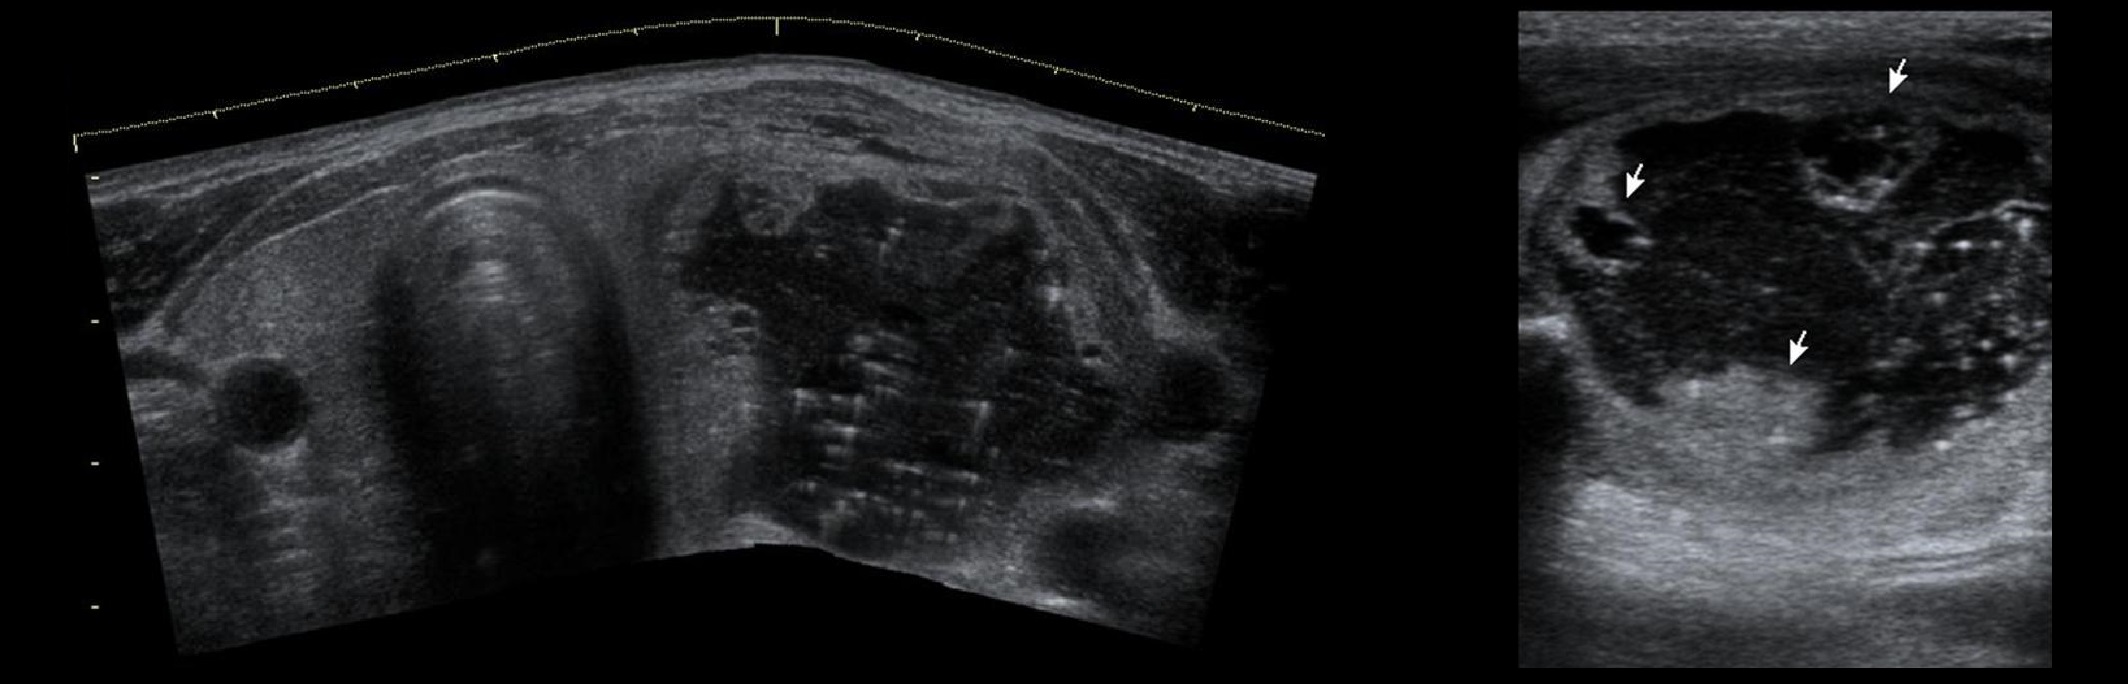 Фото узи щитовидной железы с узлом